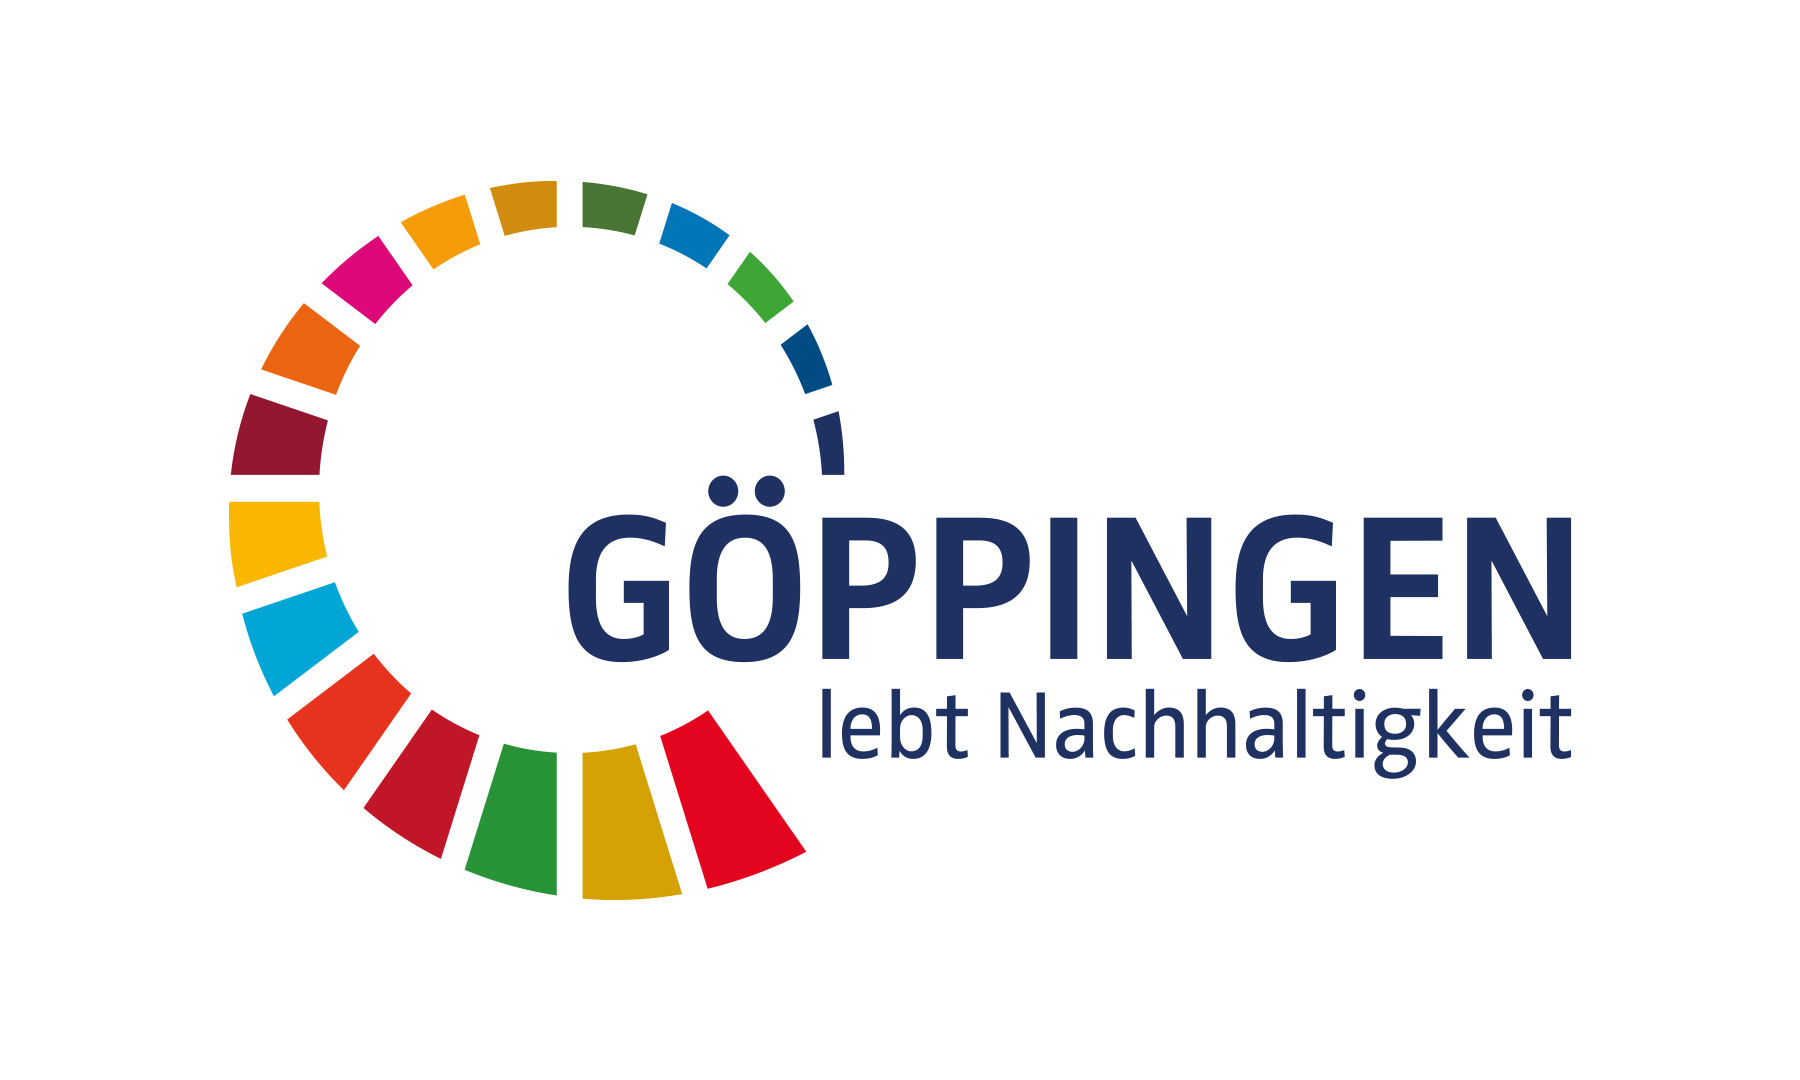 (c) Goeppingen-lebt-nachhaltigkeit.de